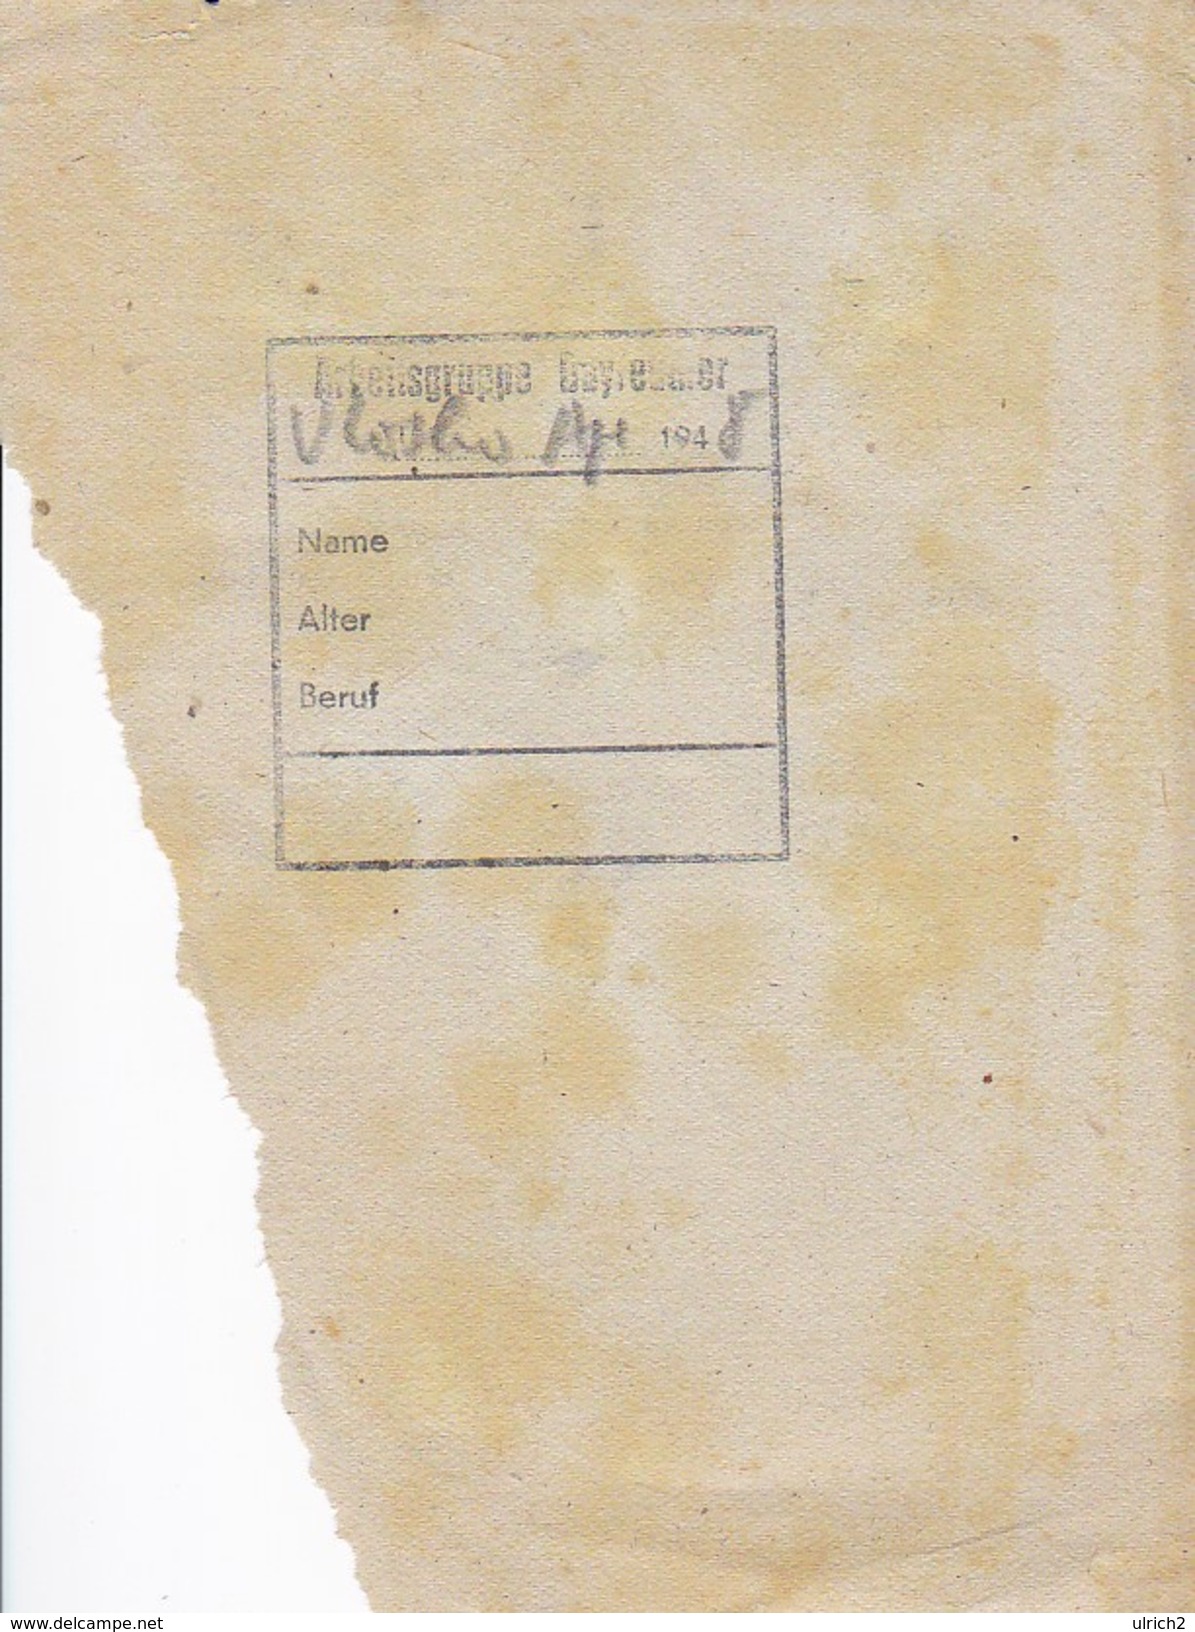 Scherenschnitt Von 1948 (31254) - Papel Chino